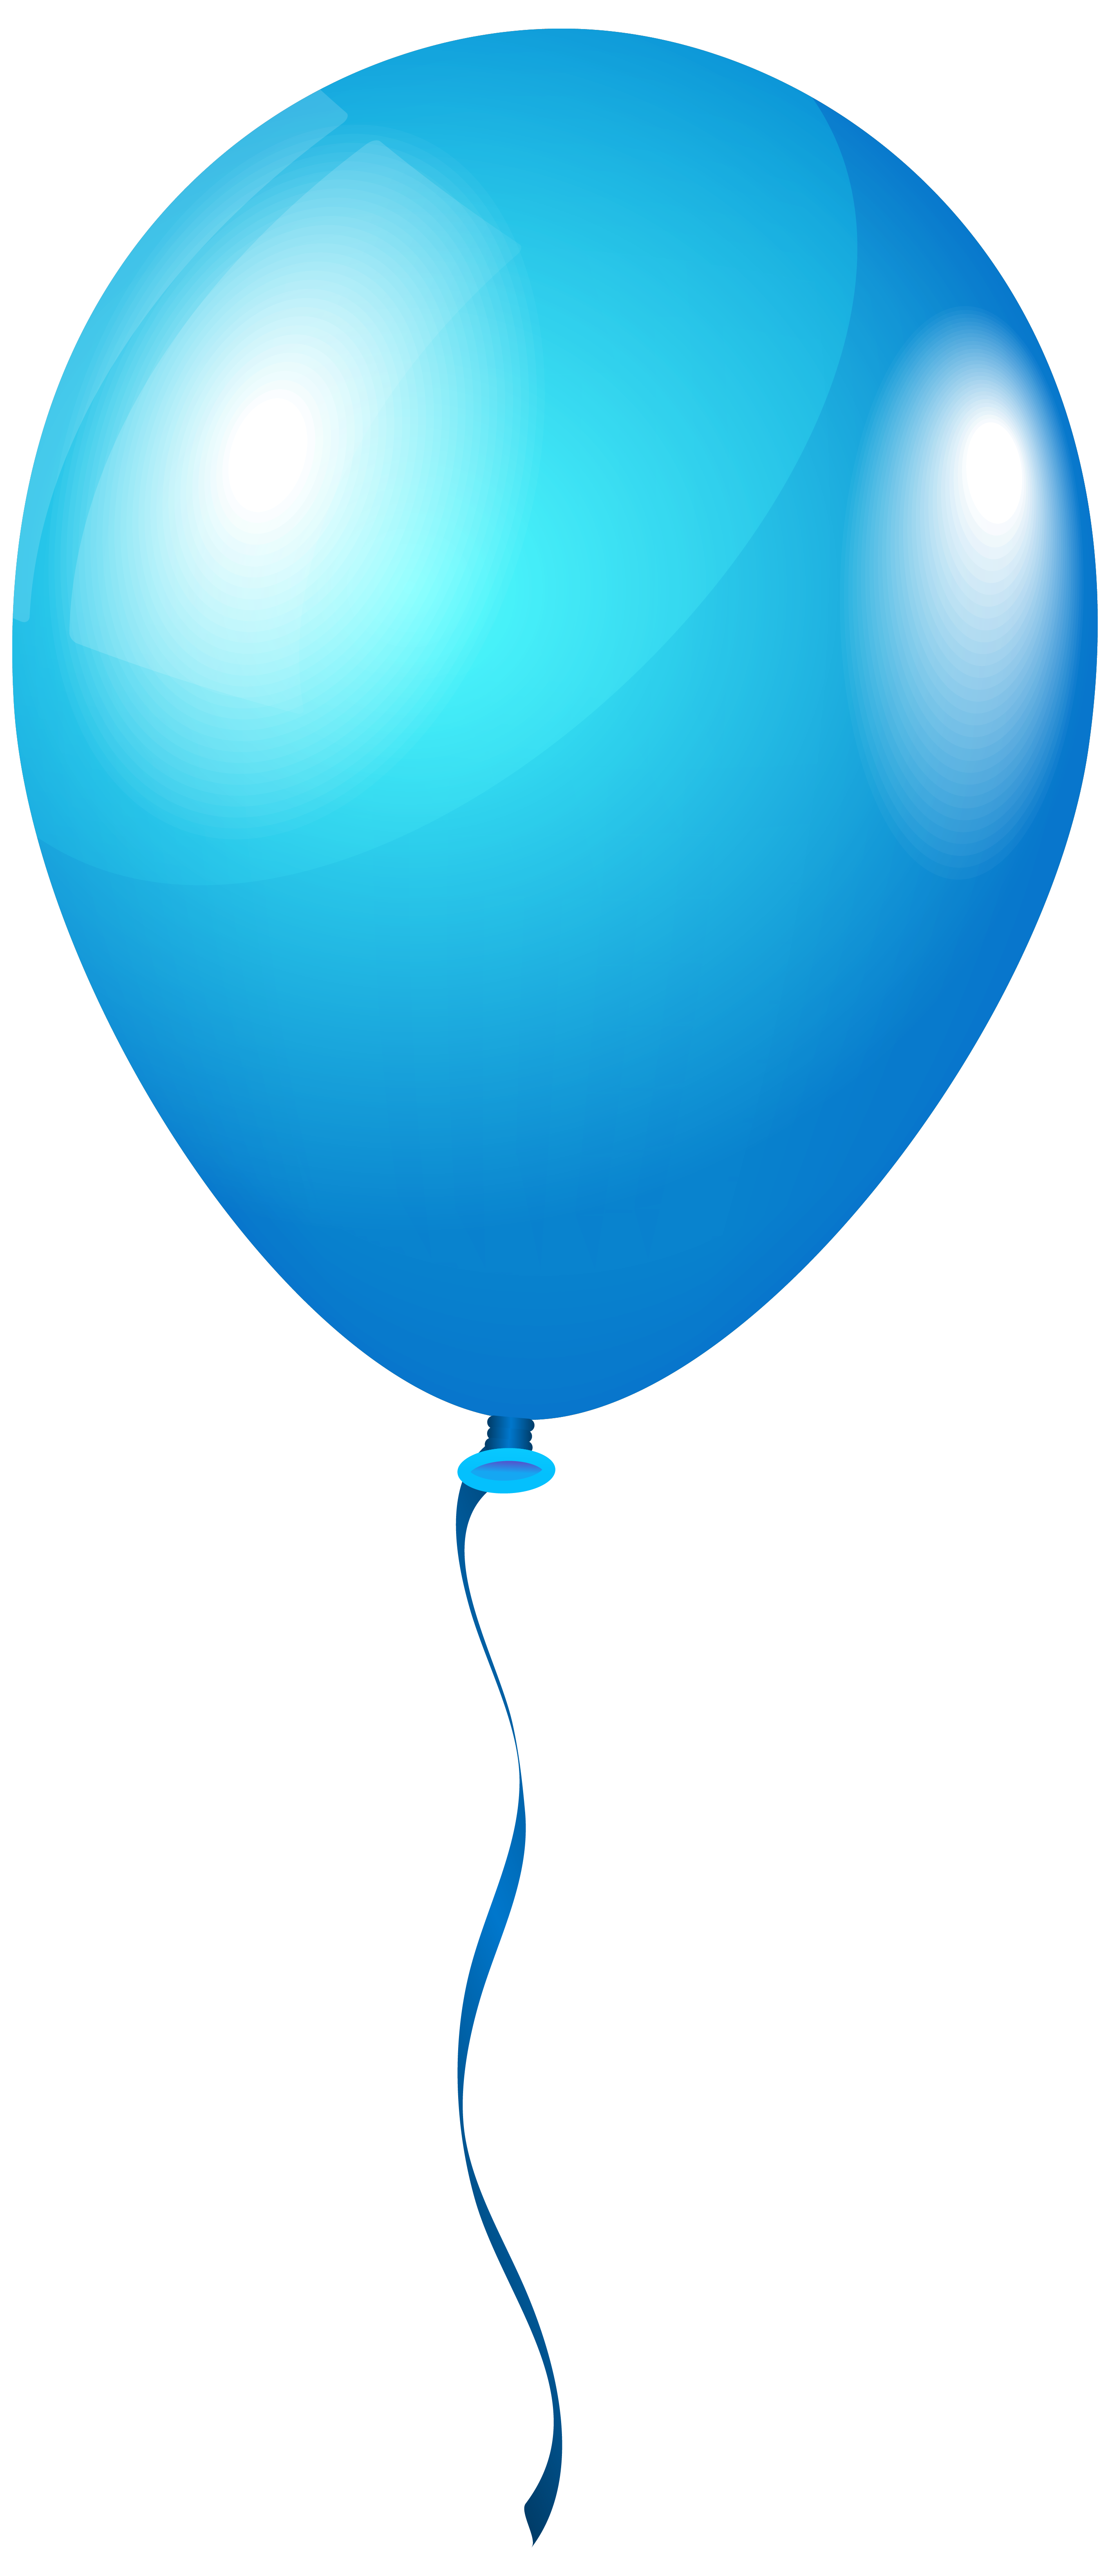 Imagem de PNG do balão